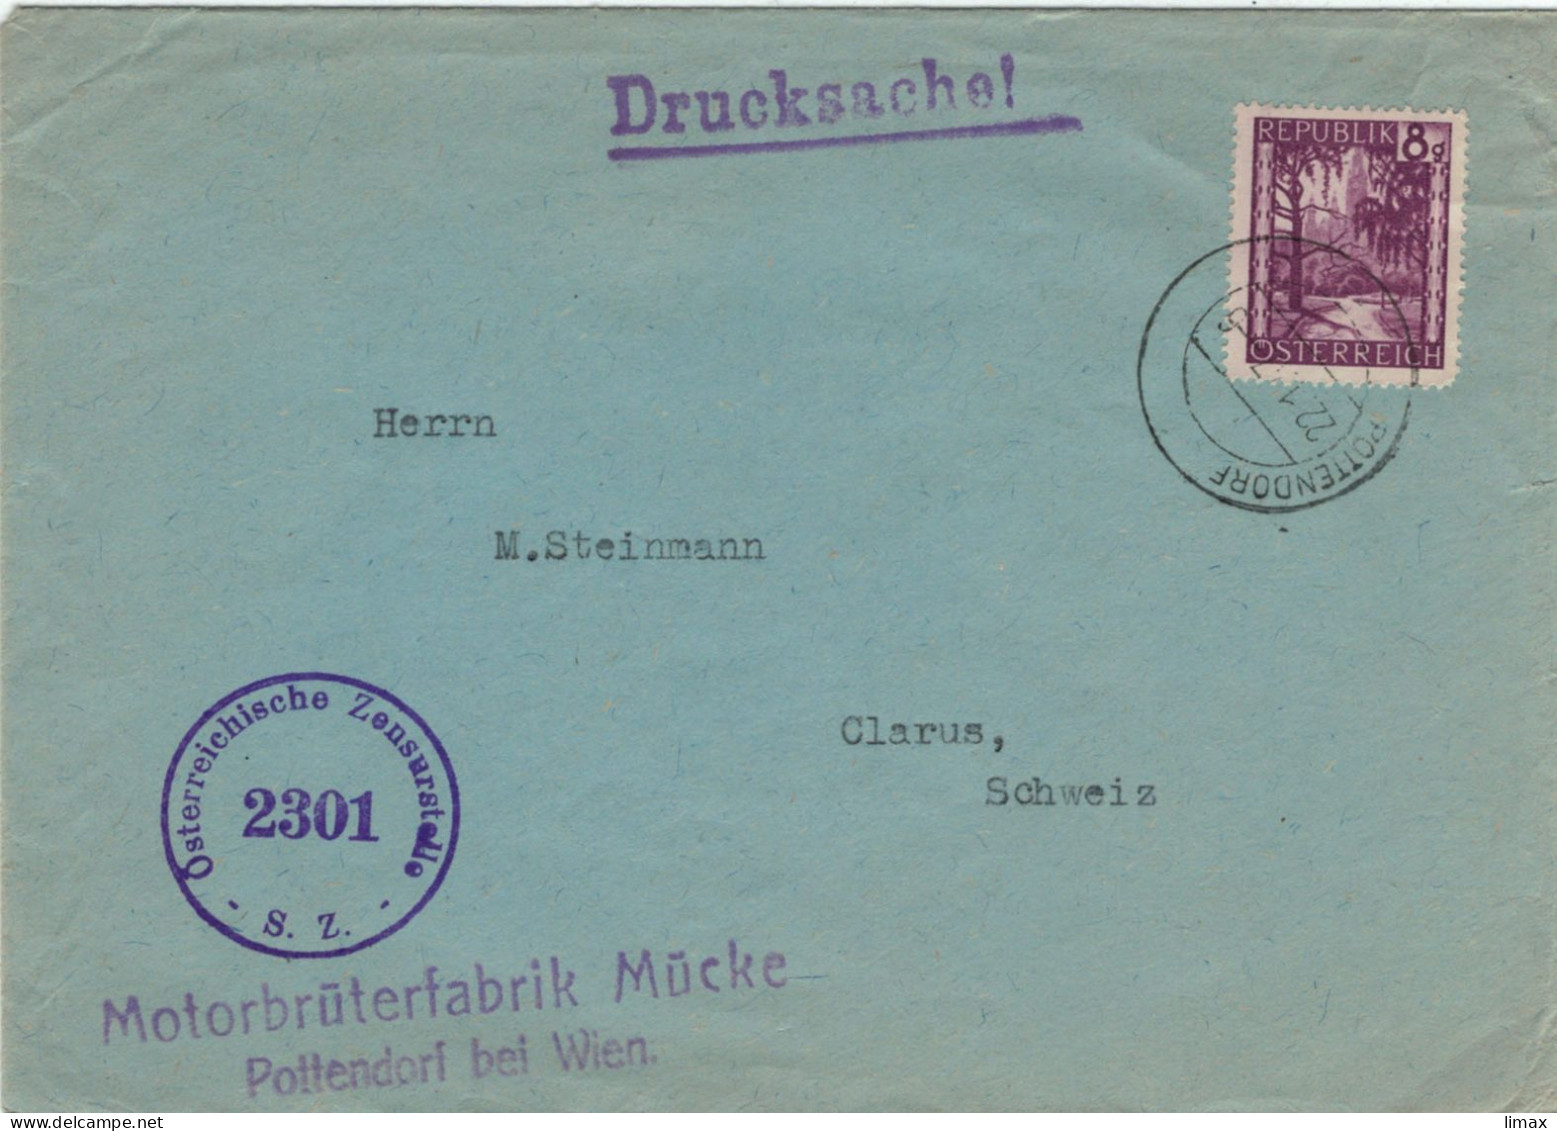 Motorbrüterfabrik Mücke Pottendorf Bei Wien 1947 Zensur 2301 > Glarus - Geflügelzucht Tierschutz Tierleid Skandale - Cartas & Documentos